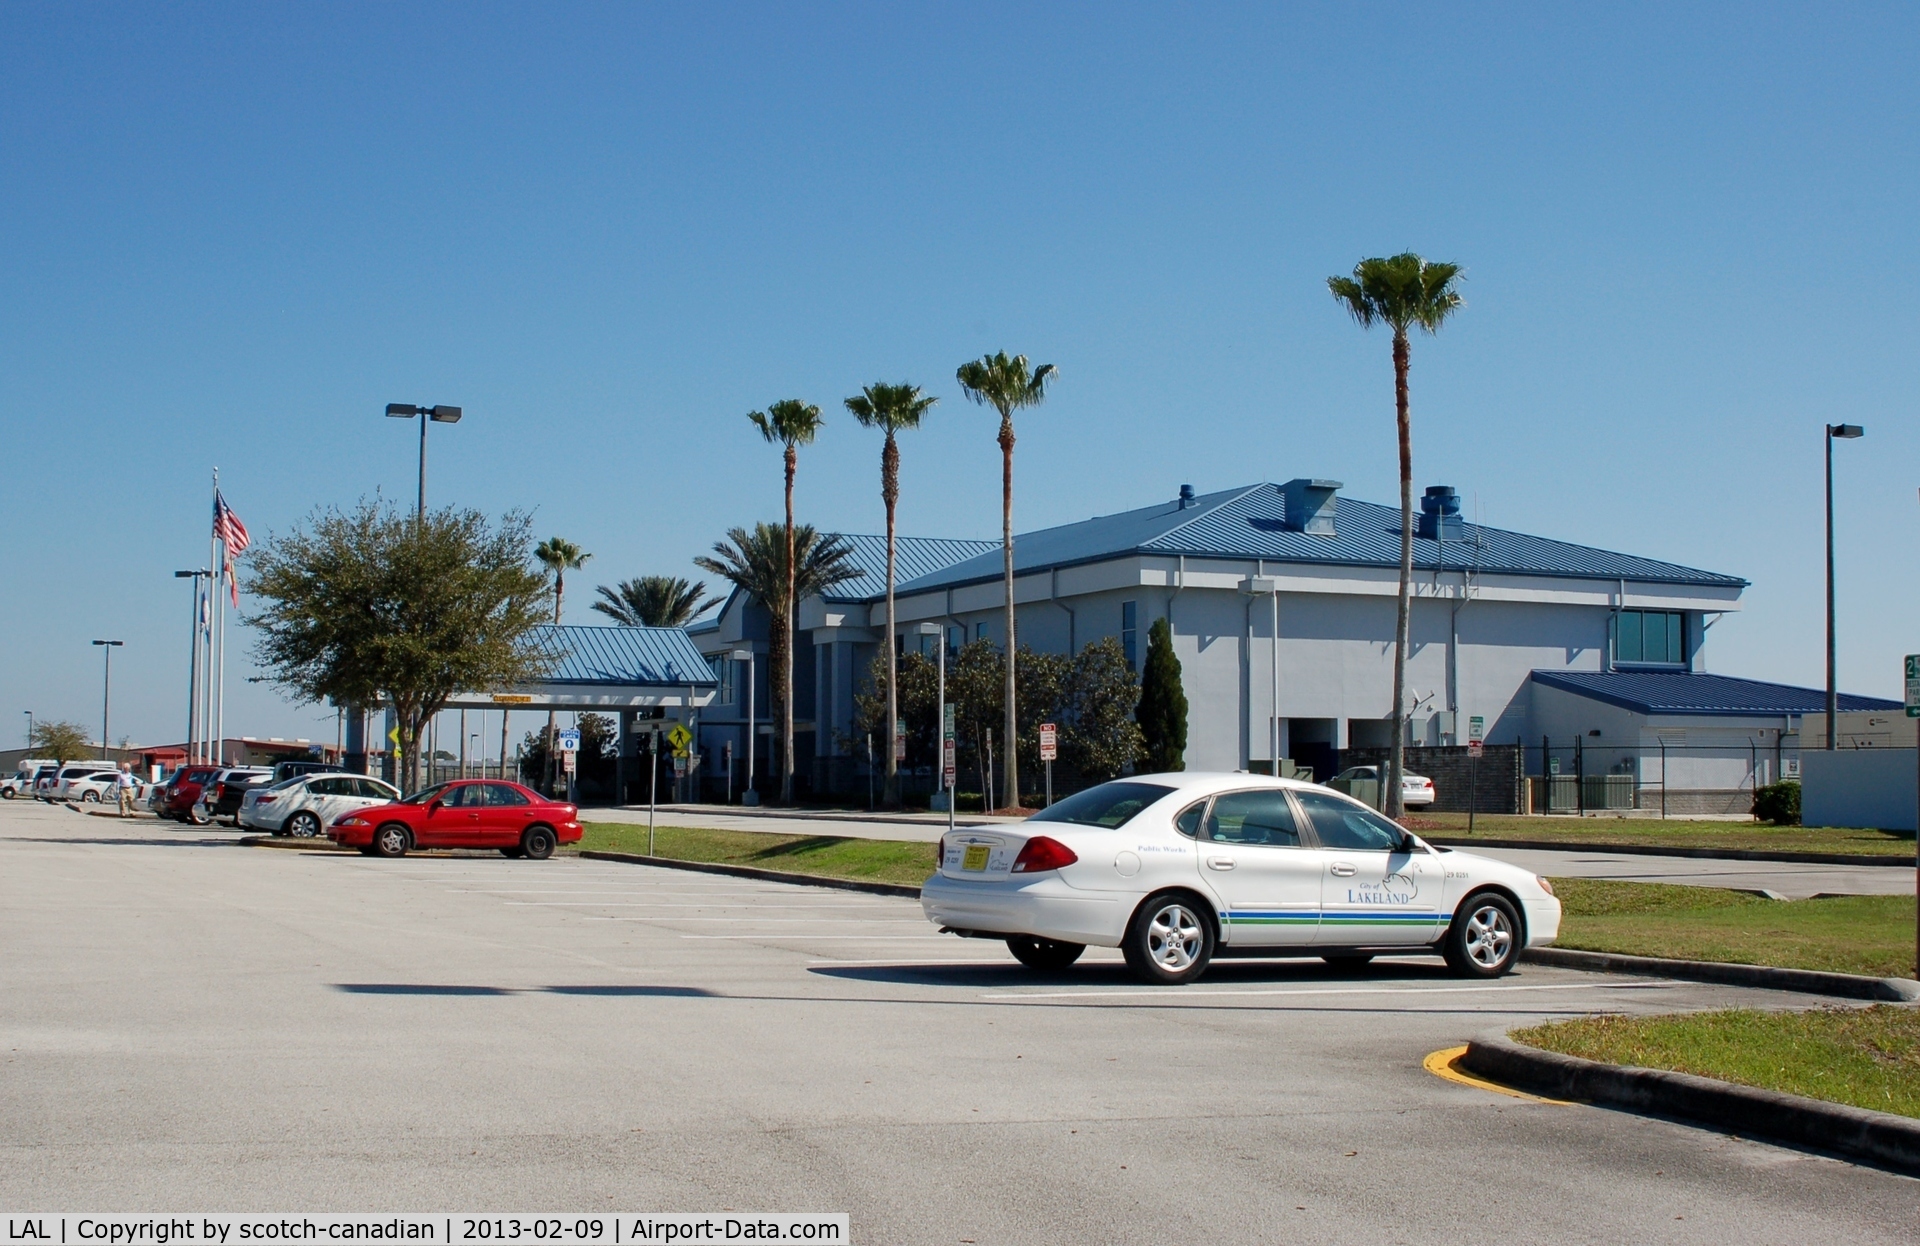 Lakeland Linder Regional Airport (LAL) - Terminal Building at Lakeland Linder Regional Airport, Lakeland, FL 